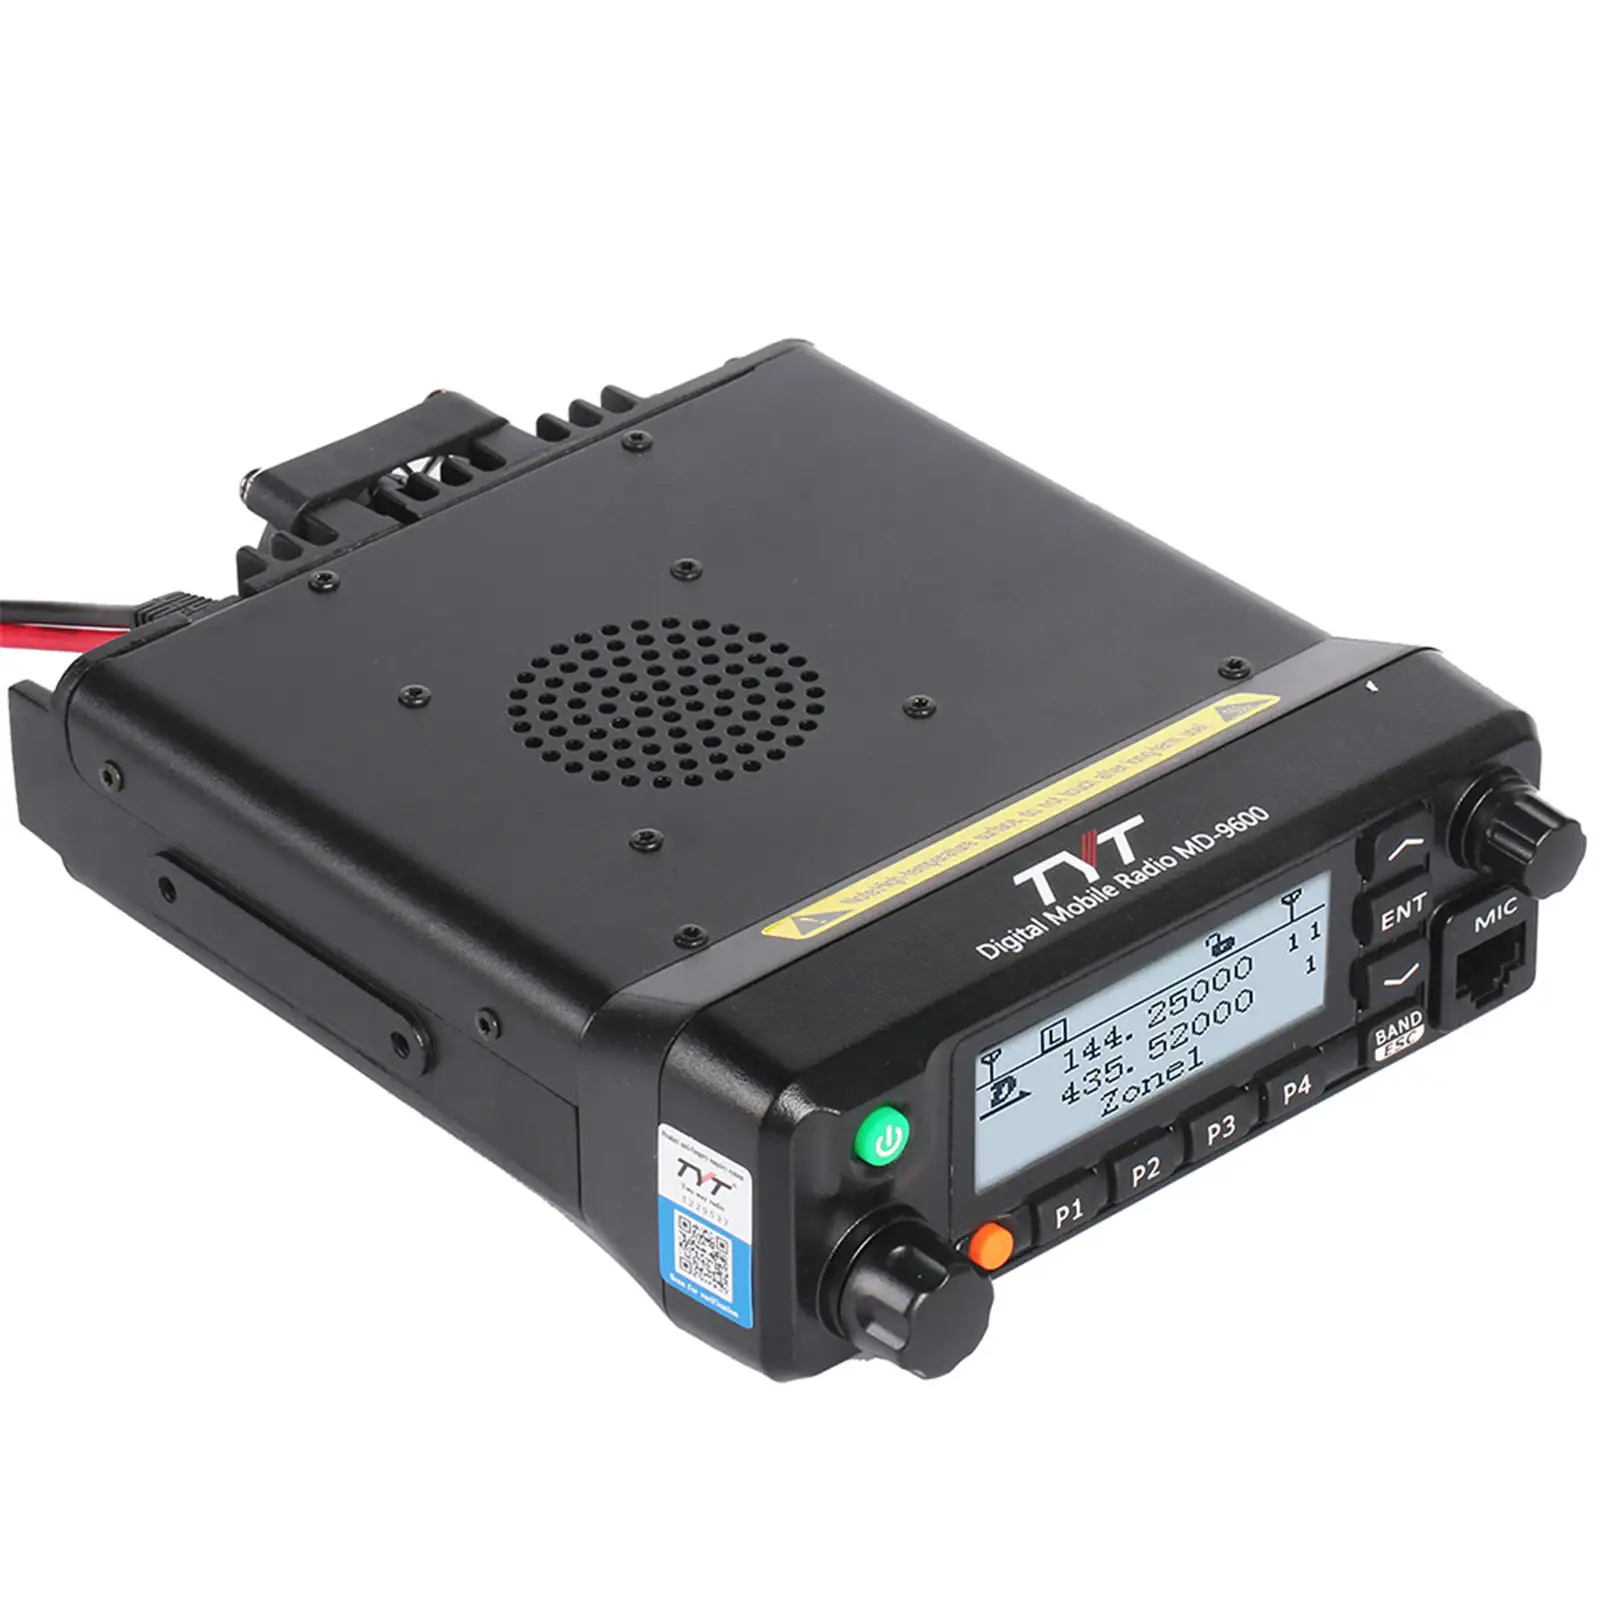 Передвижная радиостанция с GPS-радио, MD-9600 DMR, двухдиапазонный приемопередатчик, рация с кабелем для программирования, рация На длинное расстояние